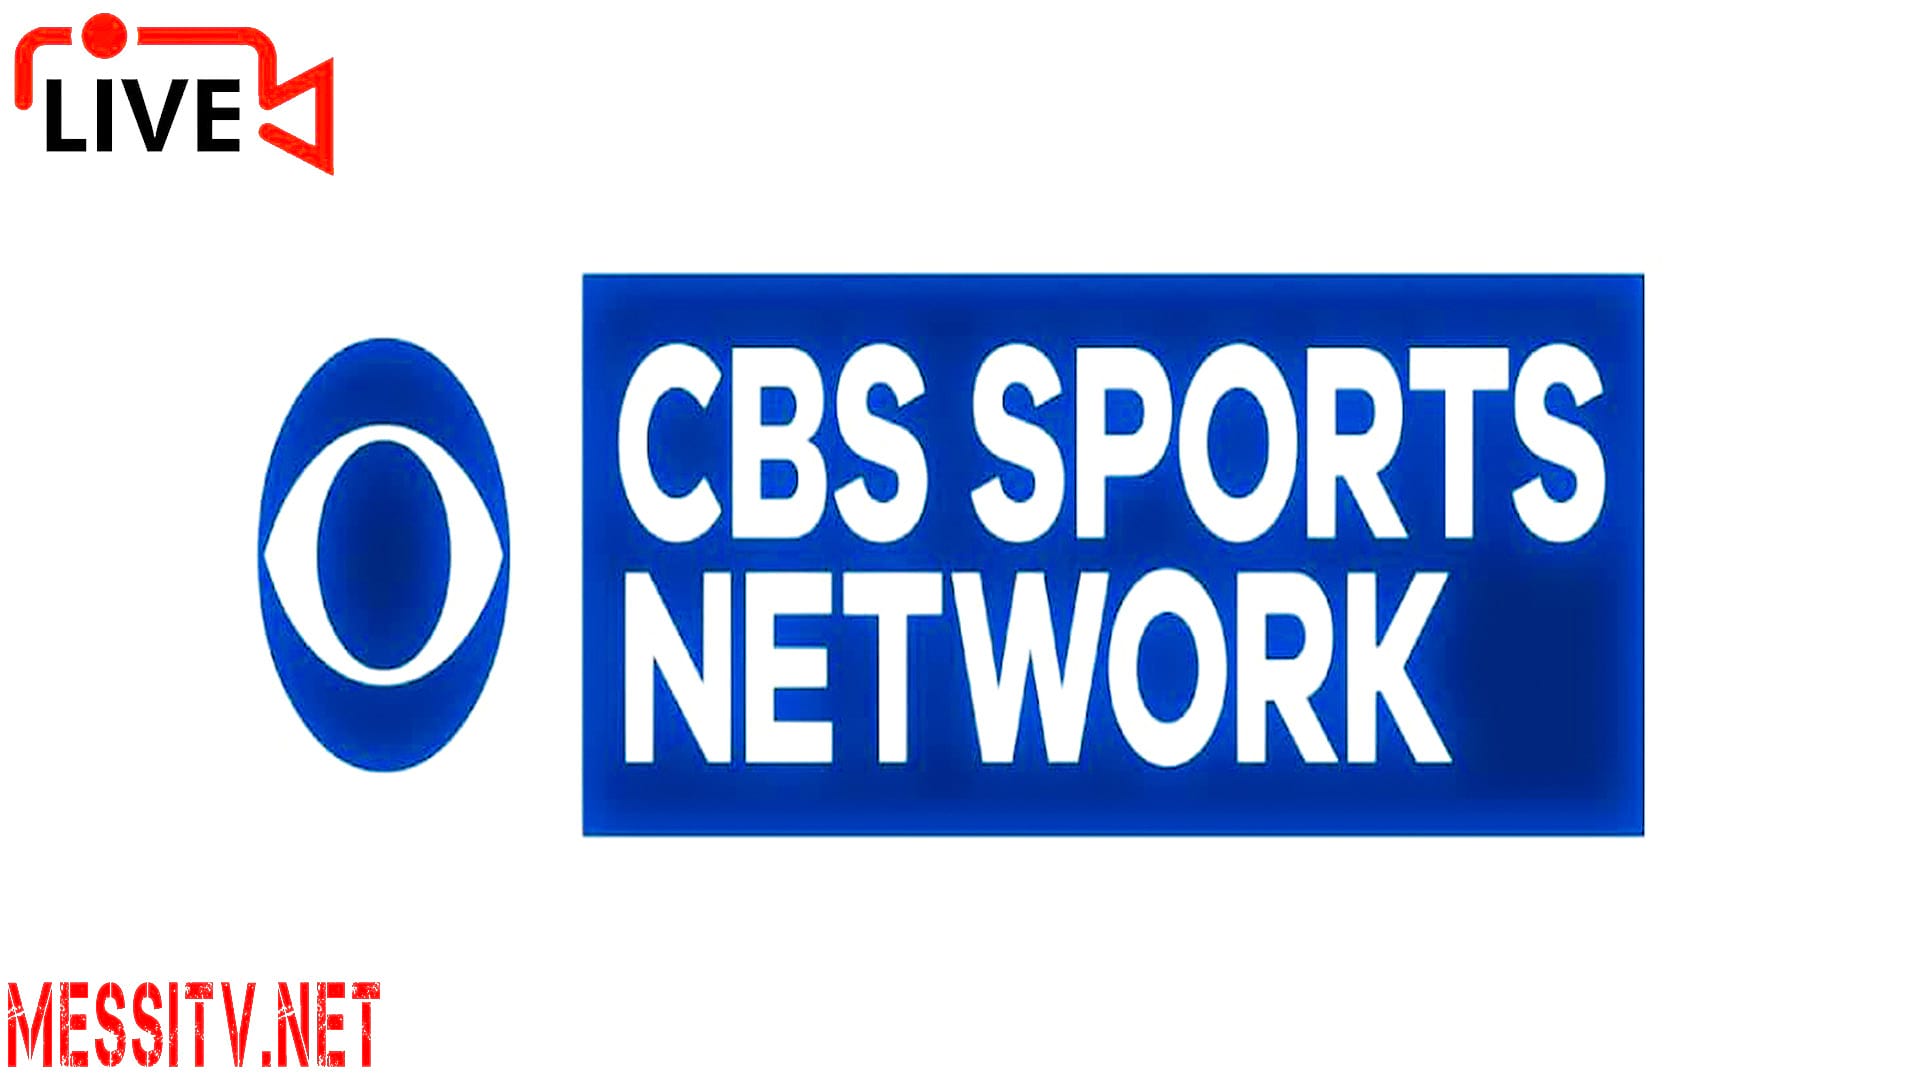 CBS SPORTS NETWORK HD, CBSSN HD, CBS SPORTS HQ, CBS NEWS, CBSN, CBS TV, USA TV CHANNELS LIVE